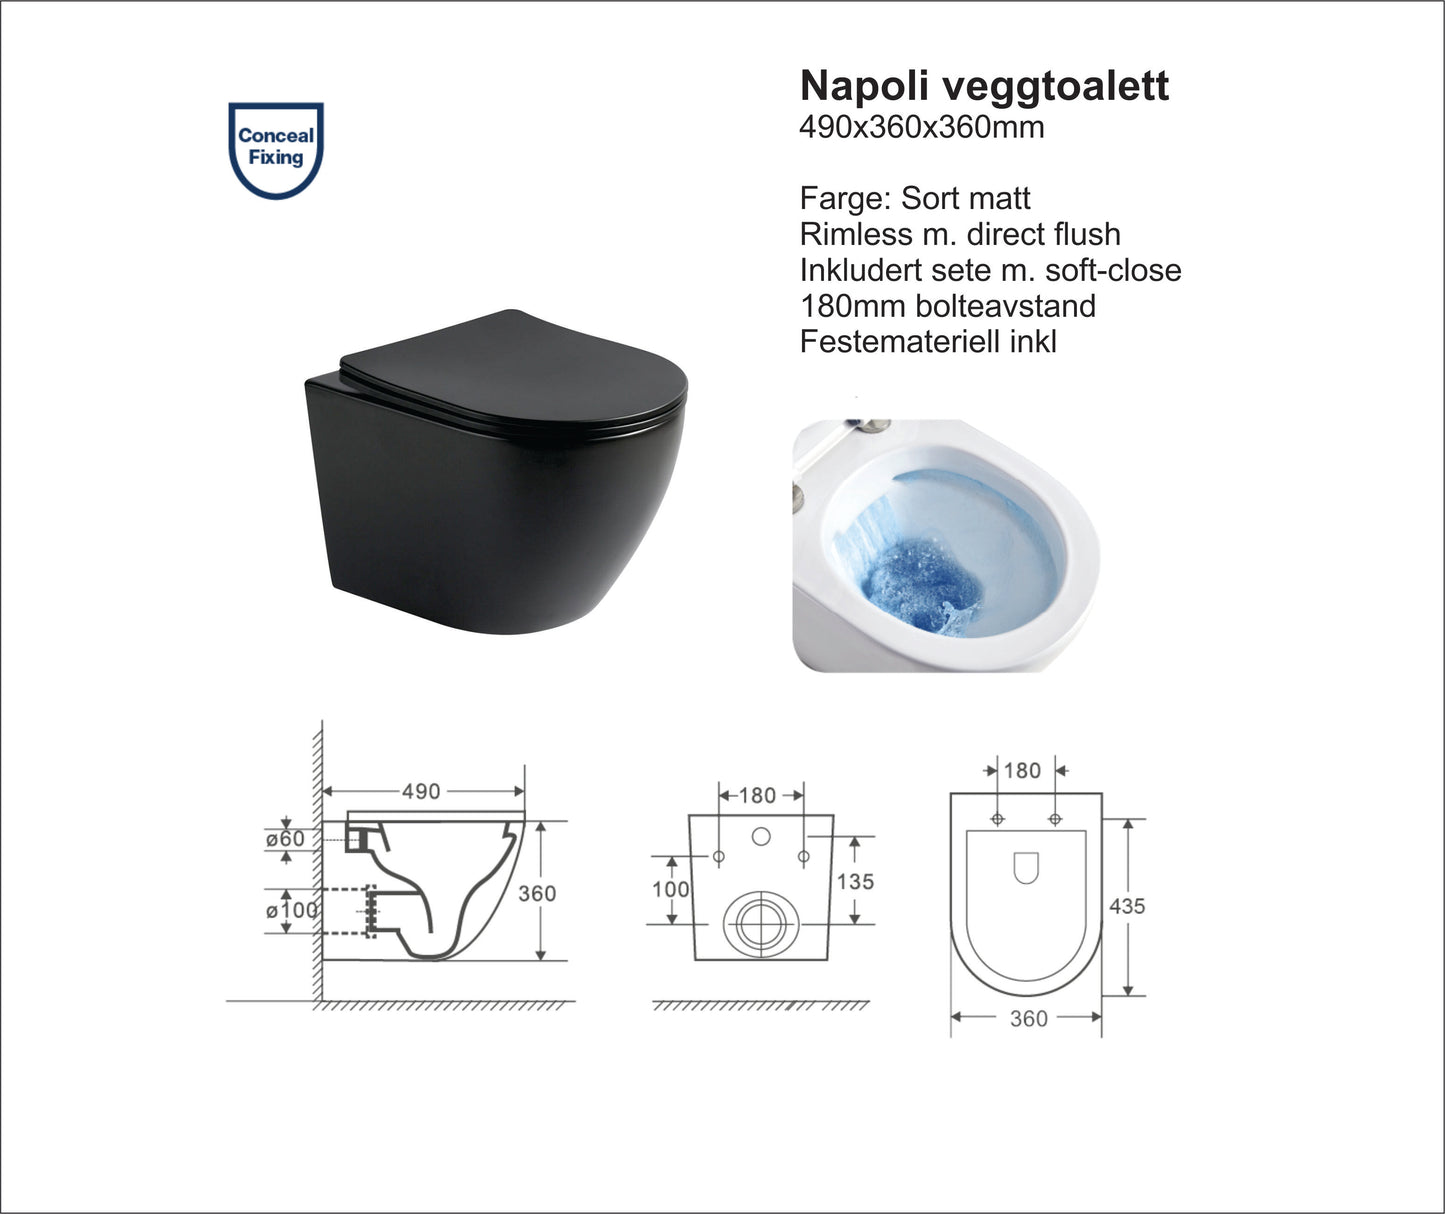 Napoli sort matt toalettpakke, veggskål, softclose sete og sisterne med safetybag